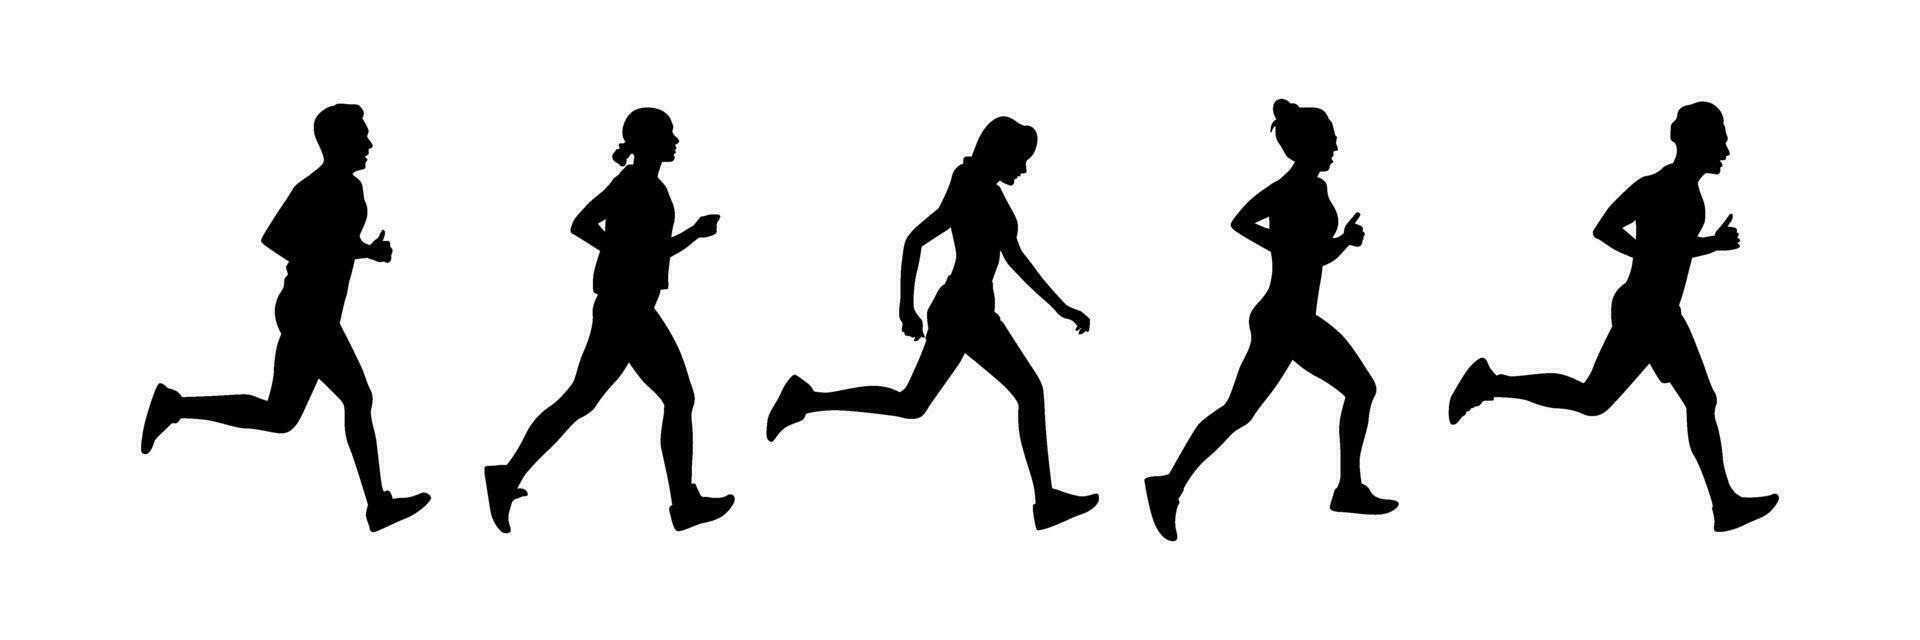 löpning människor silhuett samling, joggning illustration vektor